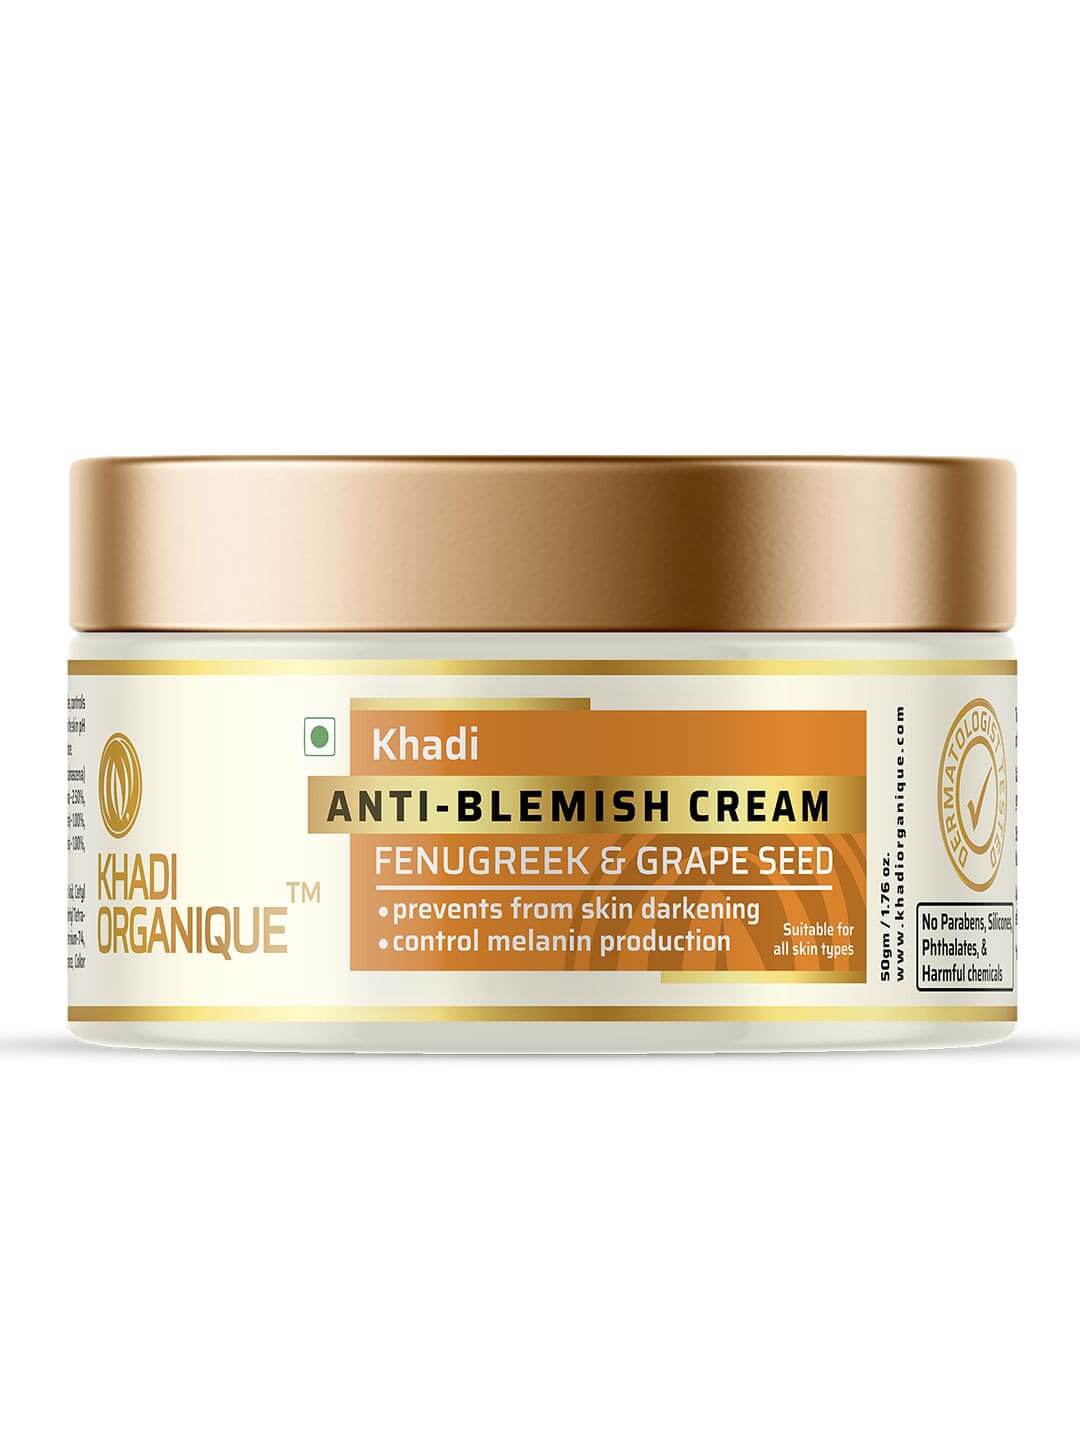 Khadi Organique Anti-blemish cream